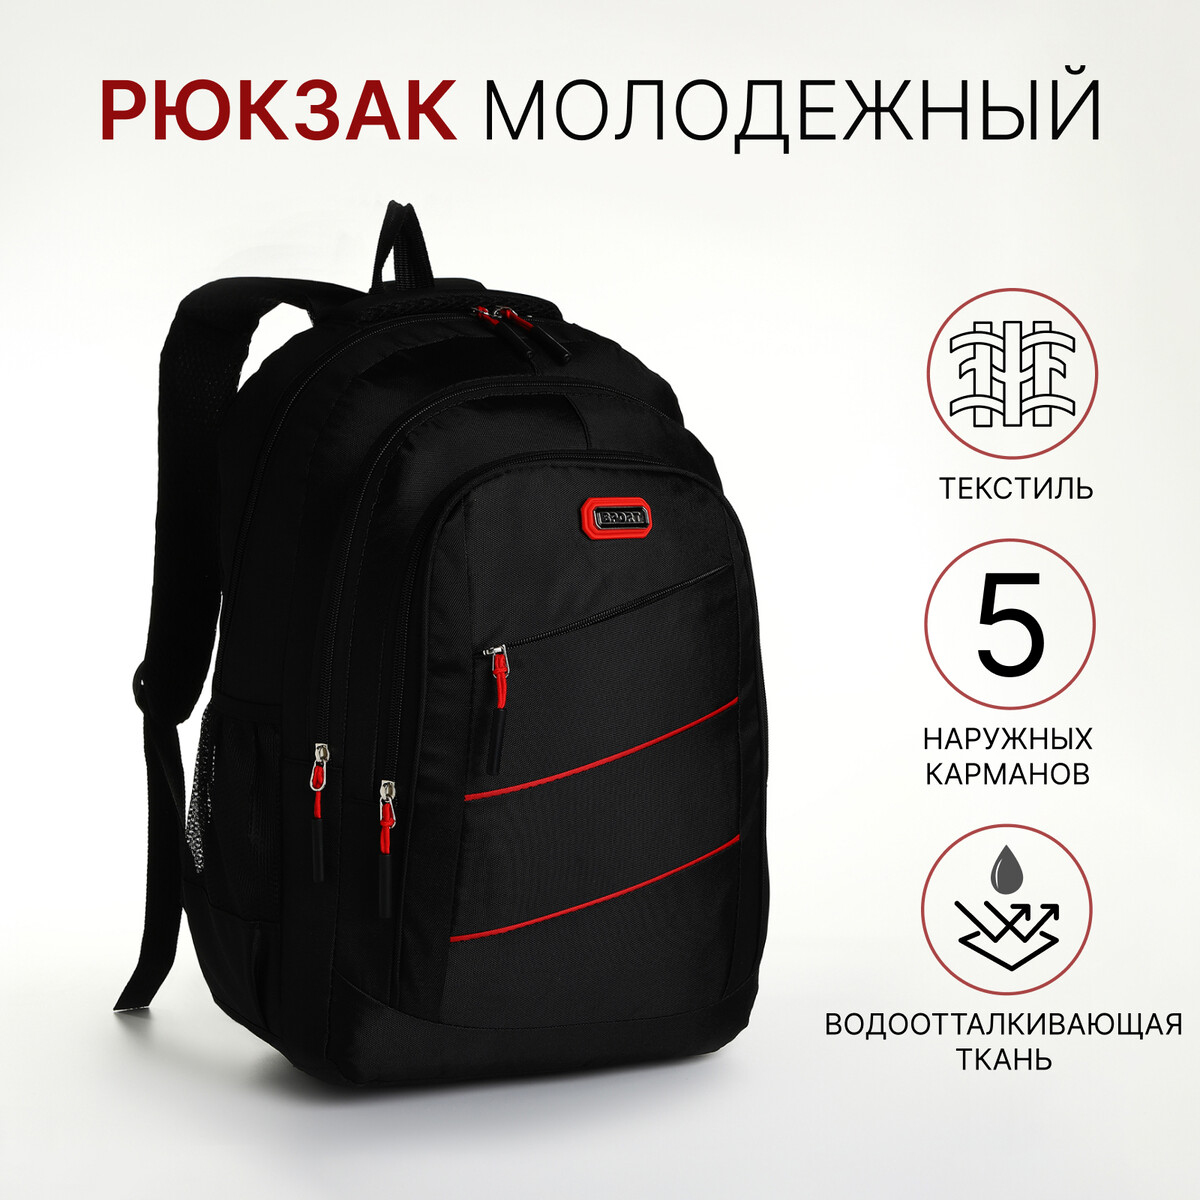 Рюкзак молодежный из текстиля на молнии, 5 карманов, цвет черный/красный